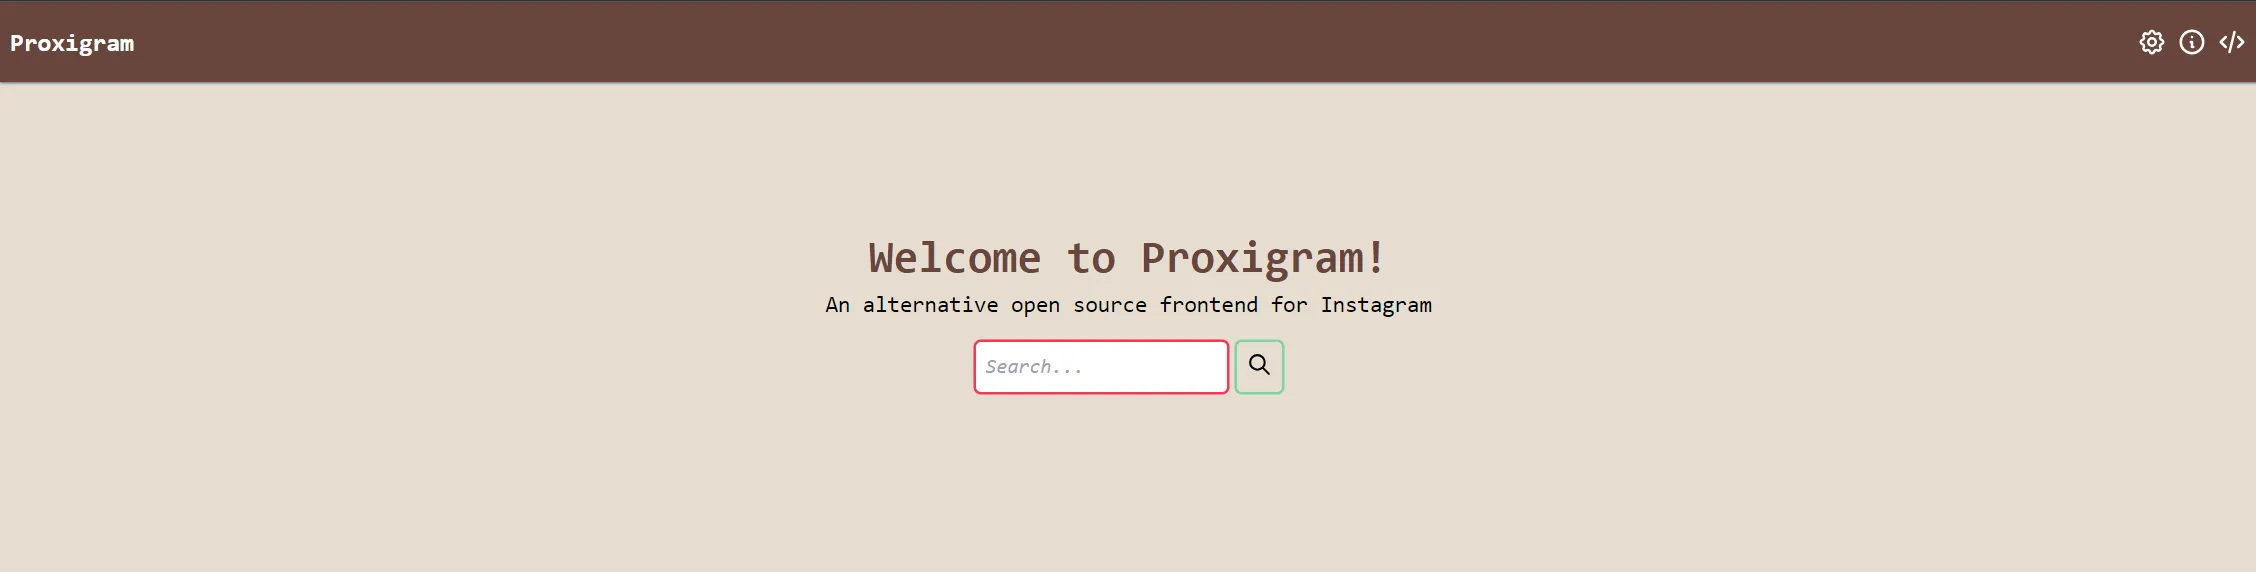 成功访问自建的proxigram应用